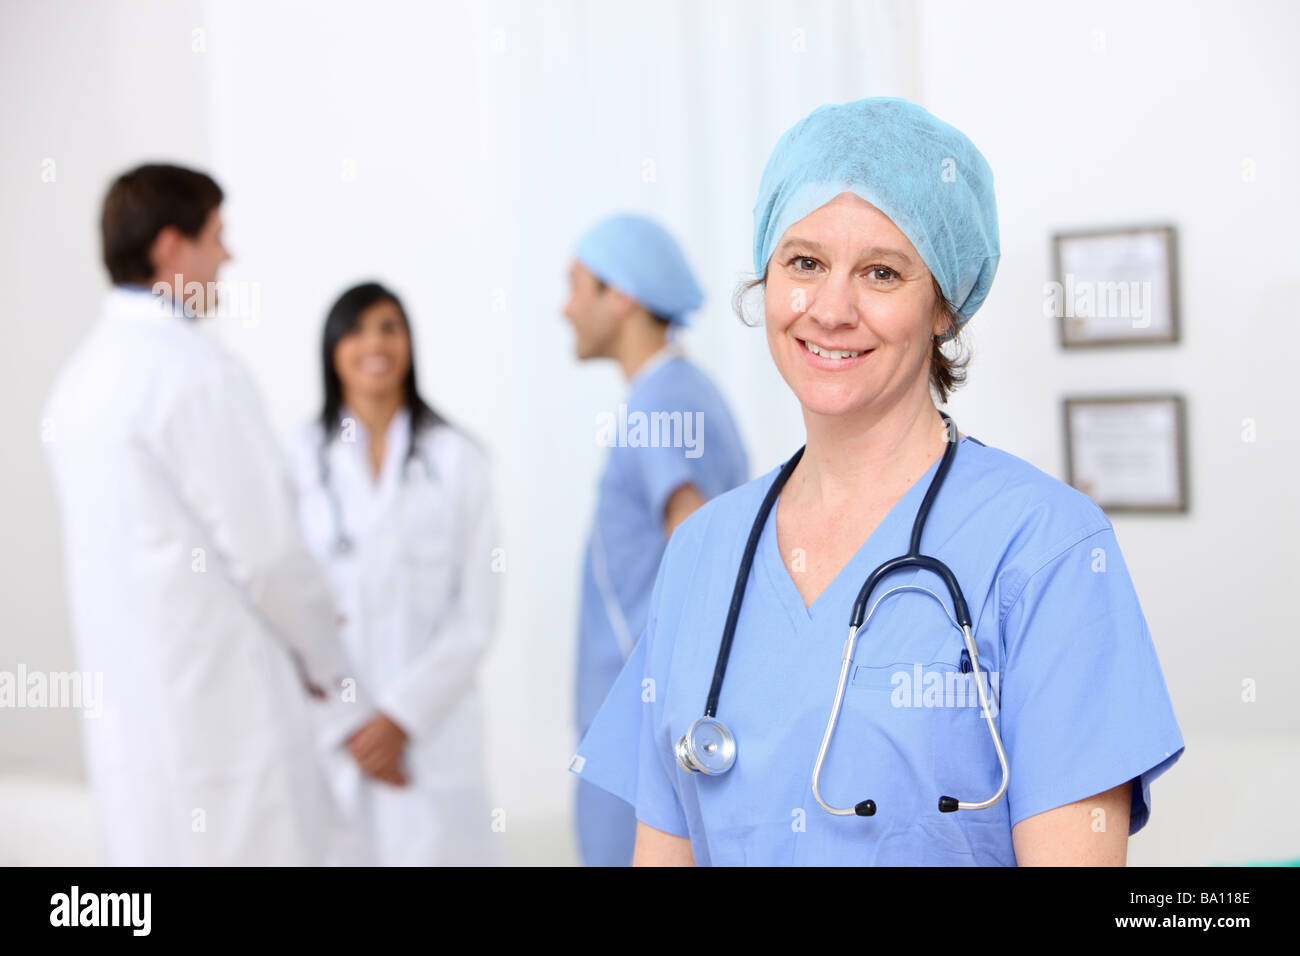 Ritratto di infermiere con altro personale medico in background Foto Stock